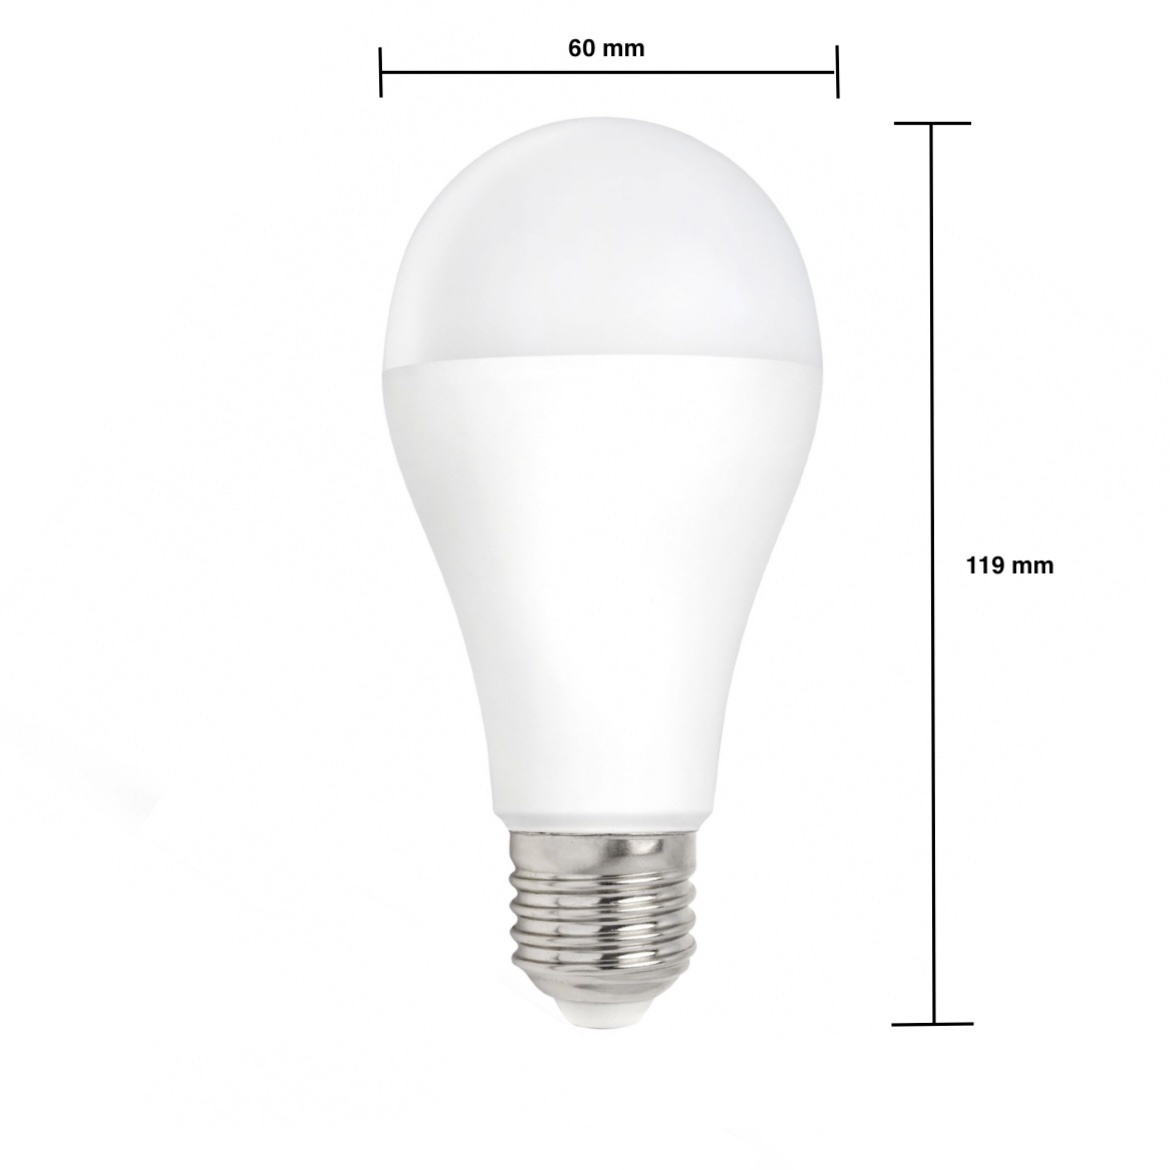 Overholdelse af have på Rute LED pære dæmpbar - E27-fatning - 12W erstatter 100W - Naturligt hvidt lys  4000K - Ledpaneler.dk